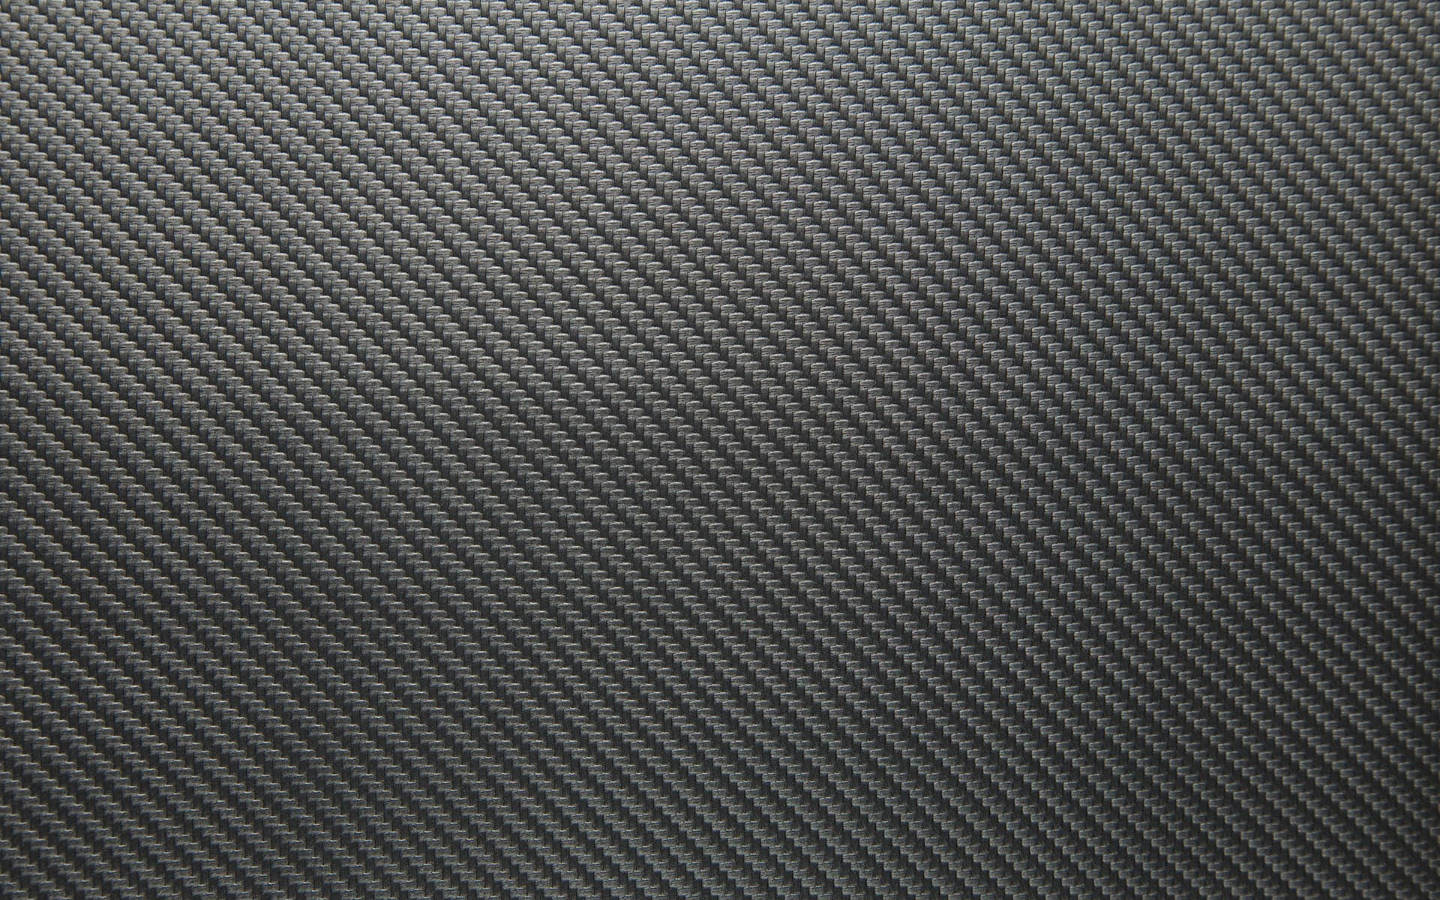 Grey Carbon Fiber 4k Wallpaper